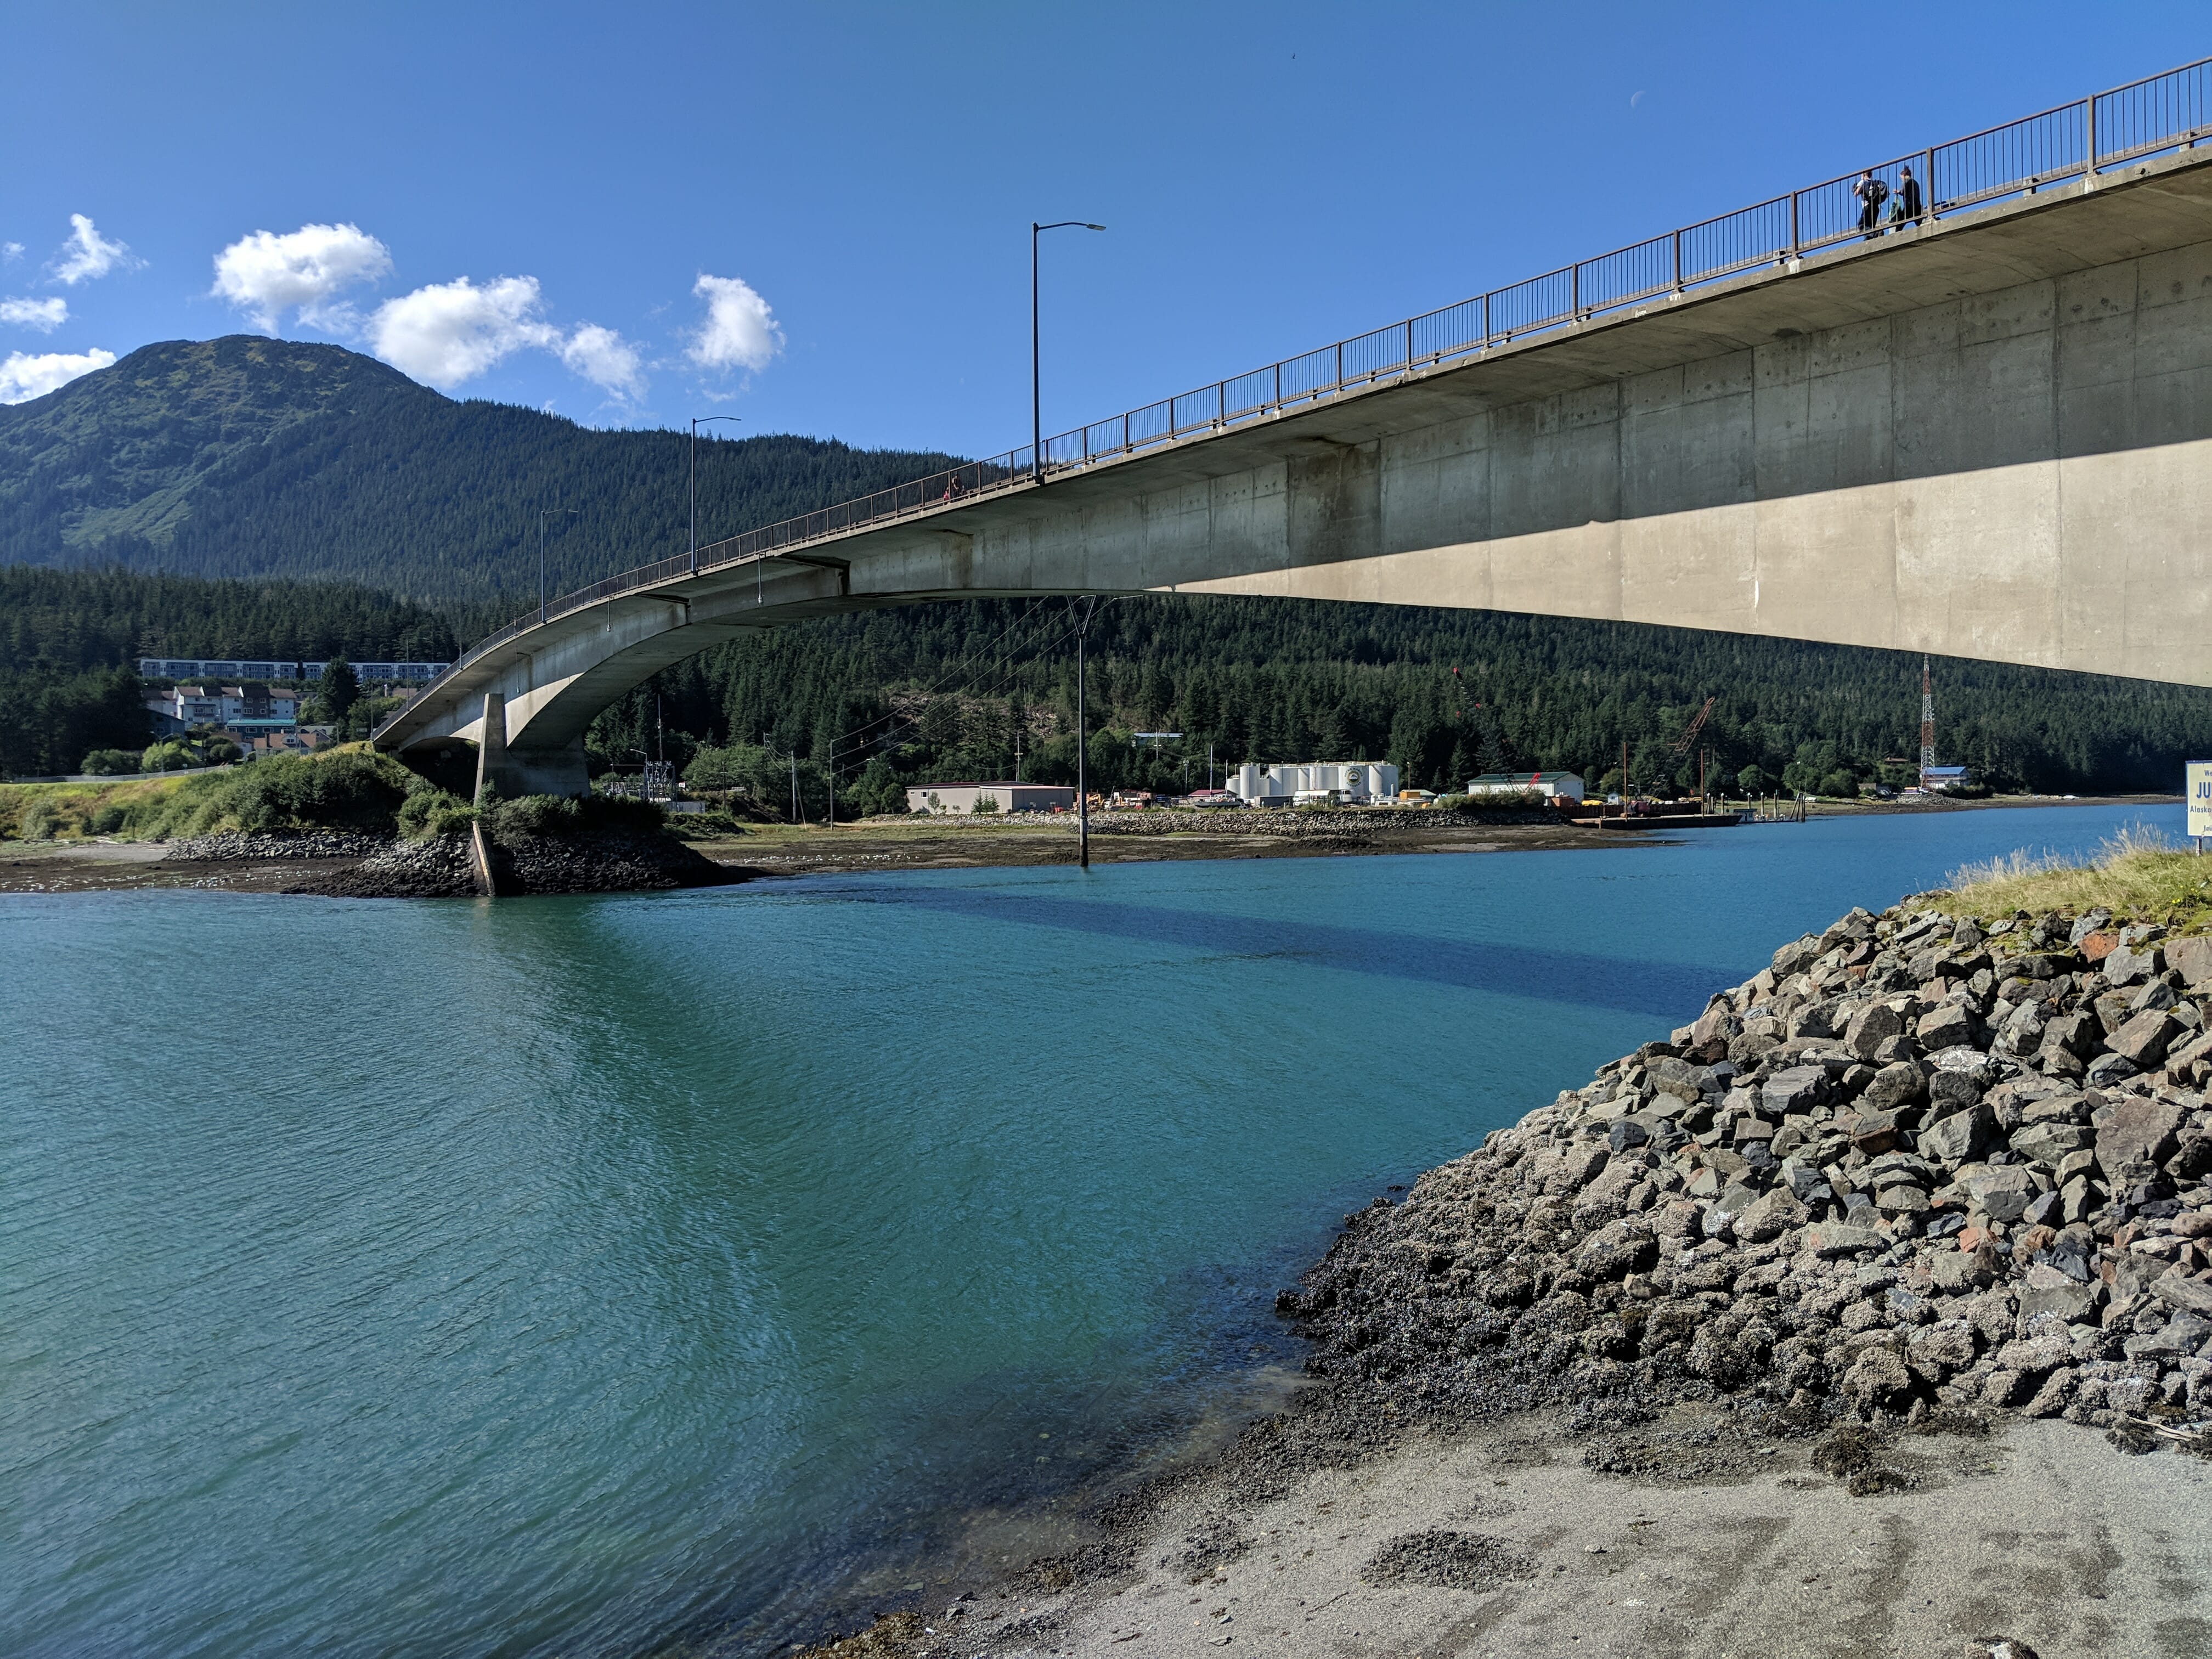 Juneau-Douglas Bridge as seen from Overstreet Park